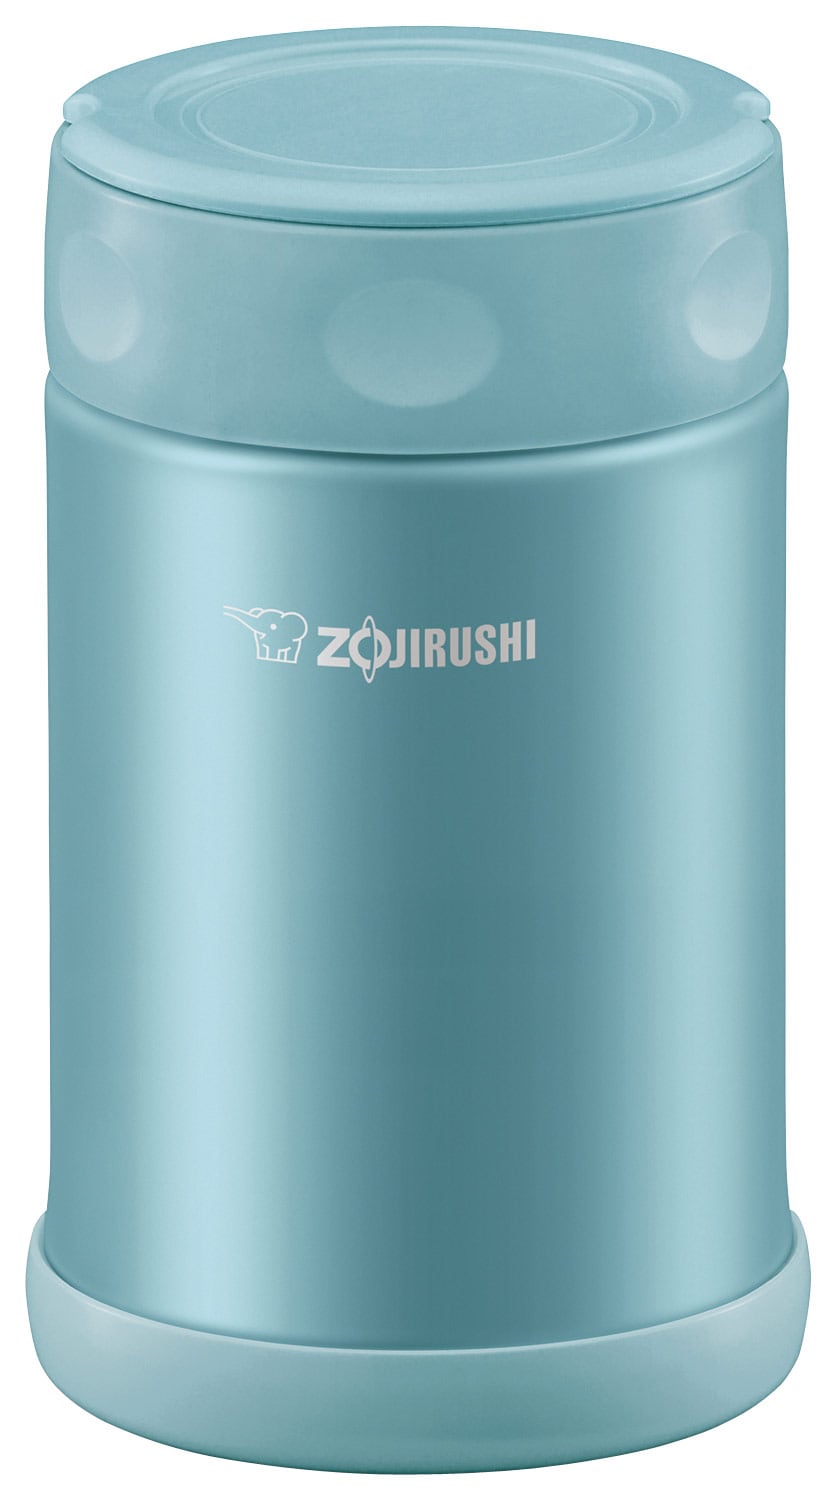 Zojirushi - 17-Oz. Food Jar - Aqua Blue_1